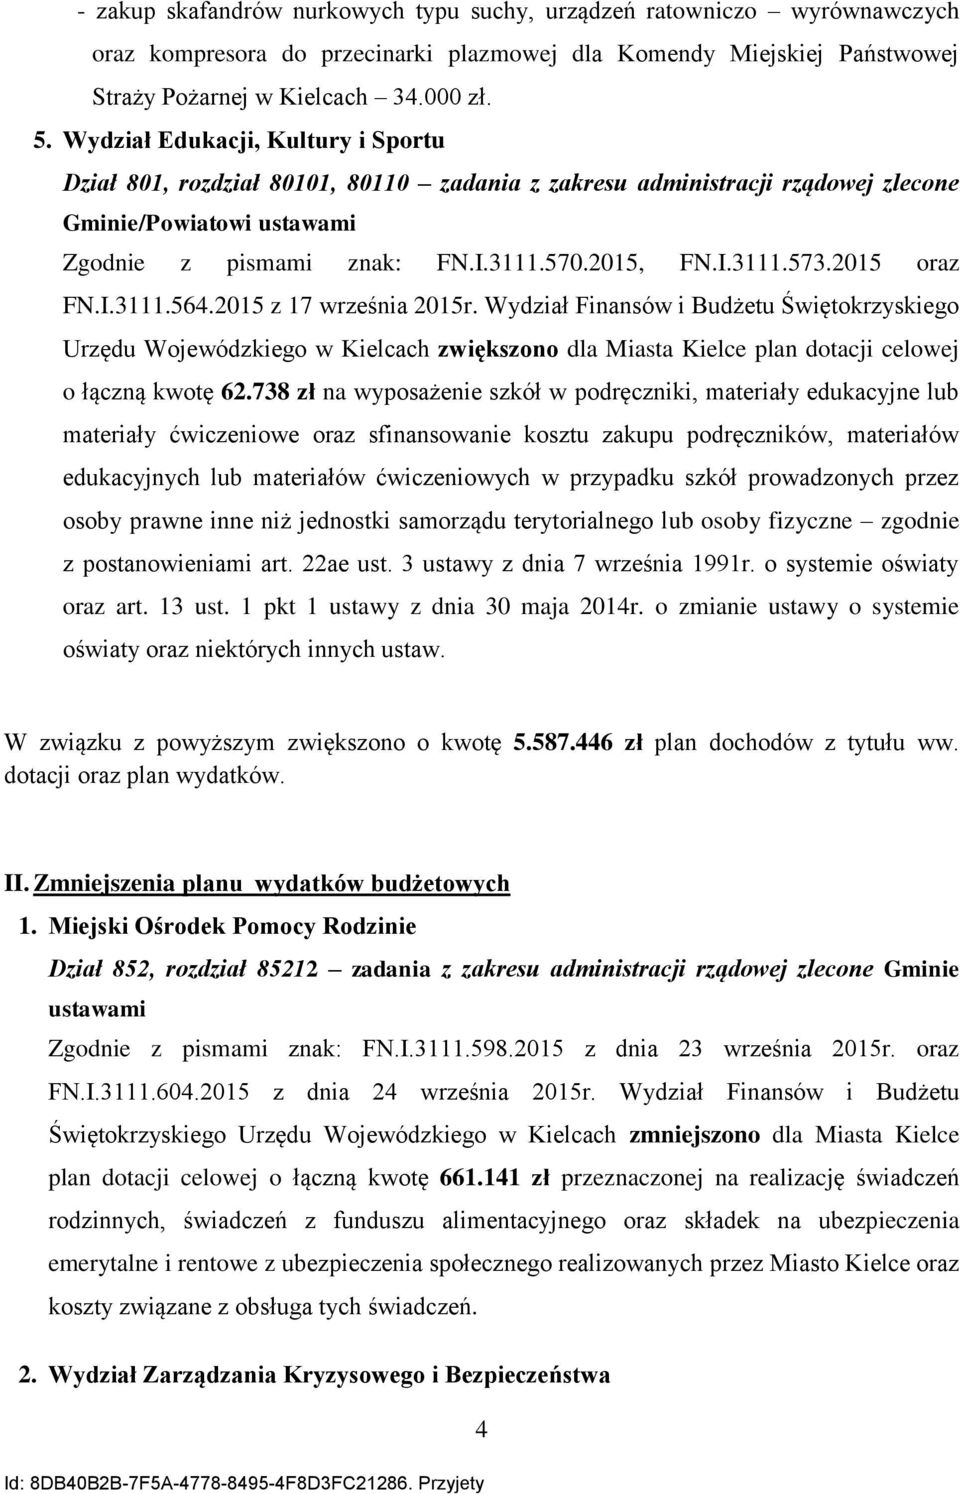 215 oraz FN.I.3111.564.215 z 17 września 215r. Wydział Finansów i Budżetu Świętokrzyskiego Urzędu Wojewódzkiego w Kielcach zwiększono dla Miasta Kielce plan dotacji celowej o łączną kwotę 62.